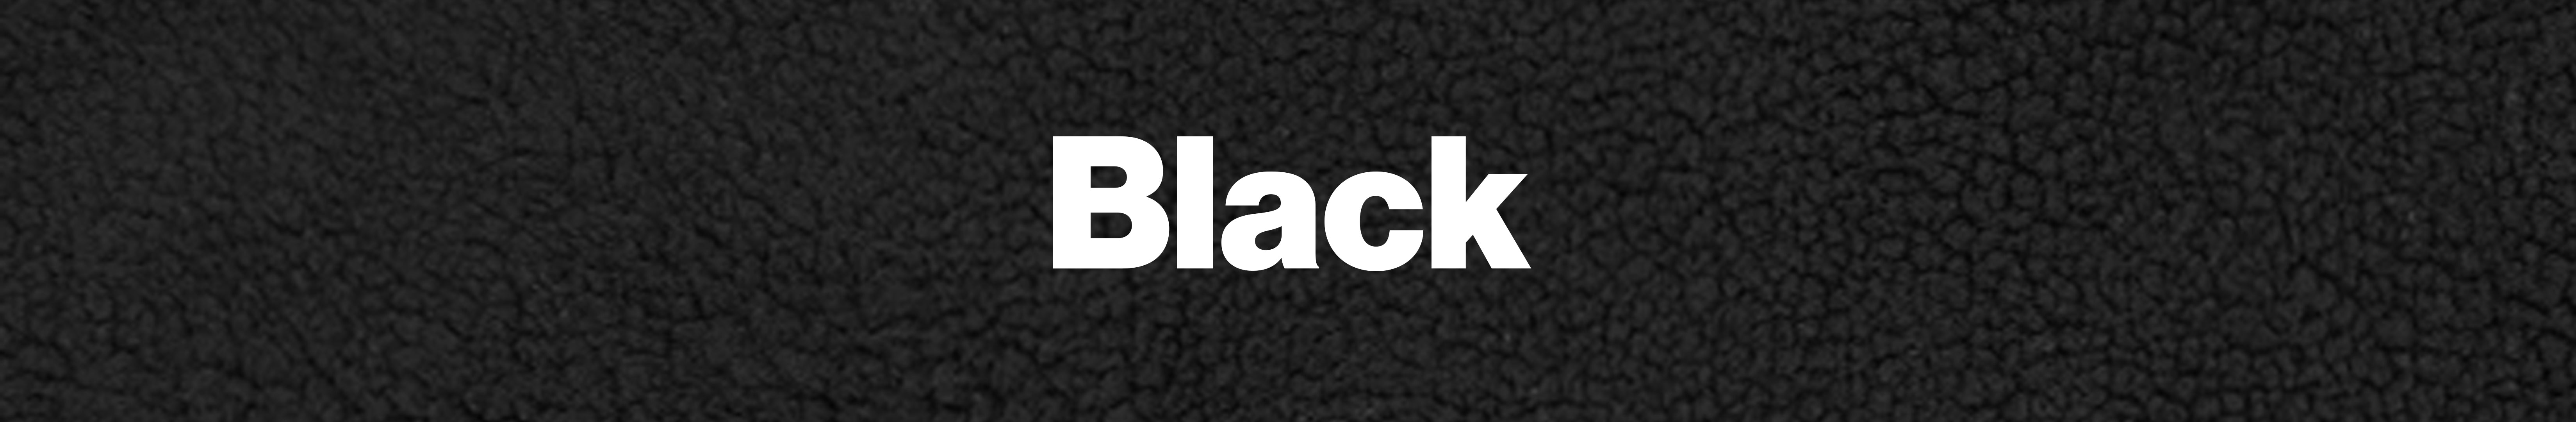 Black fleece header.jpg__PID:c7d40345-cb73-4506-bef2-775cf3b029bb